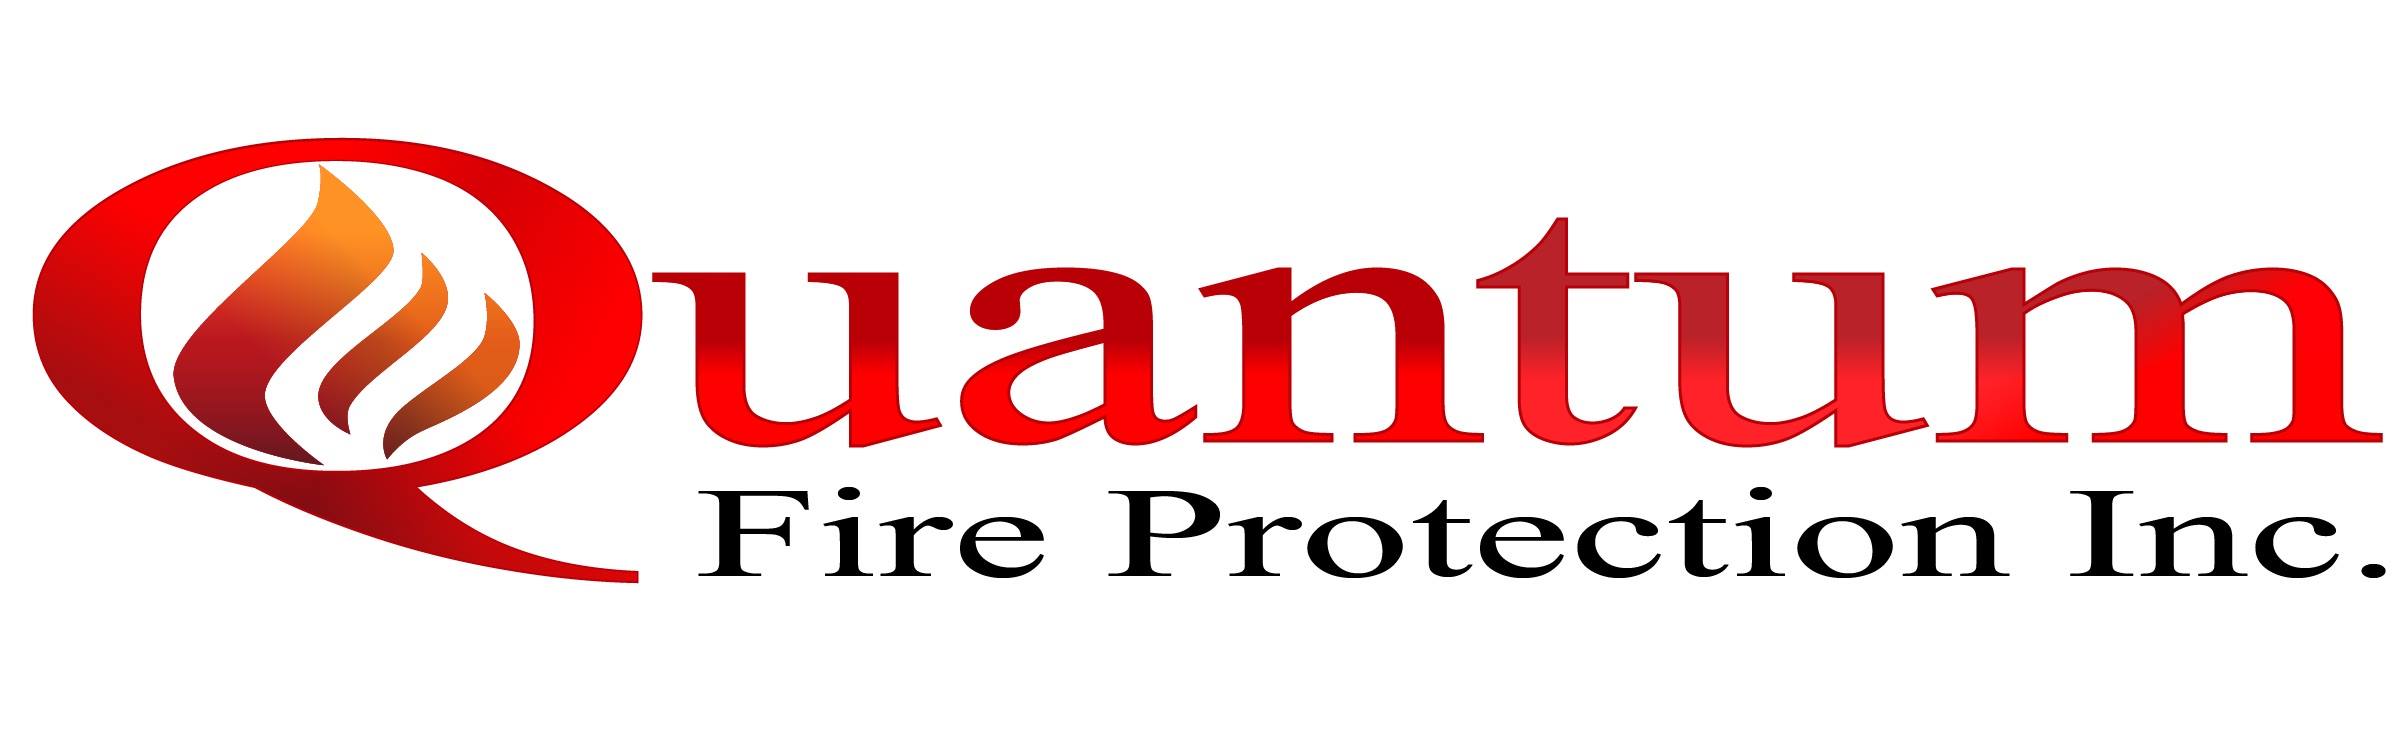 Logotipo de Quantam